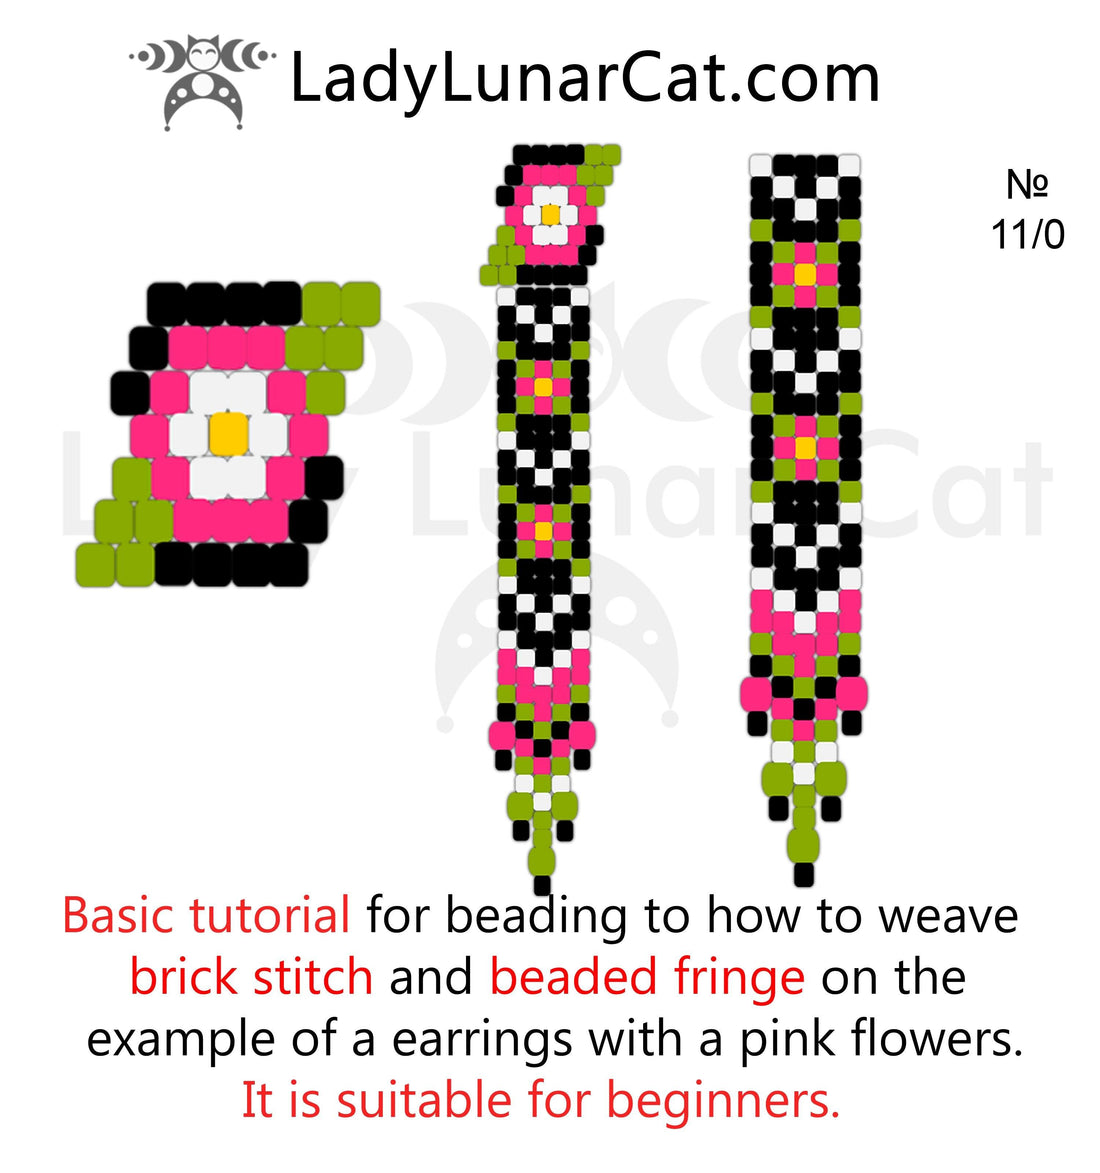 Brick stitch + fringe -   Basic instruction LadyLunarCat